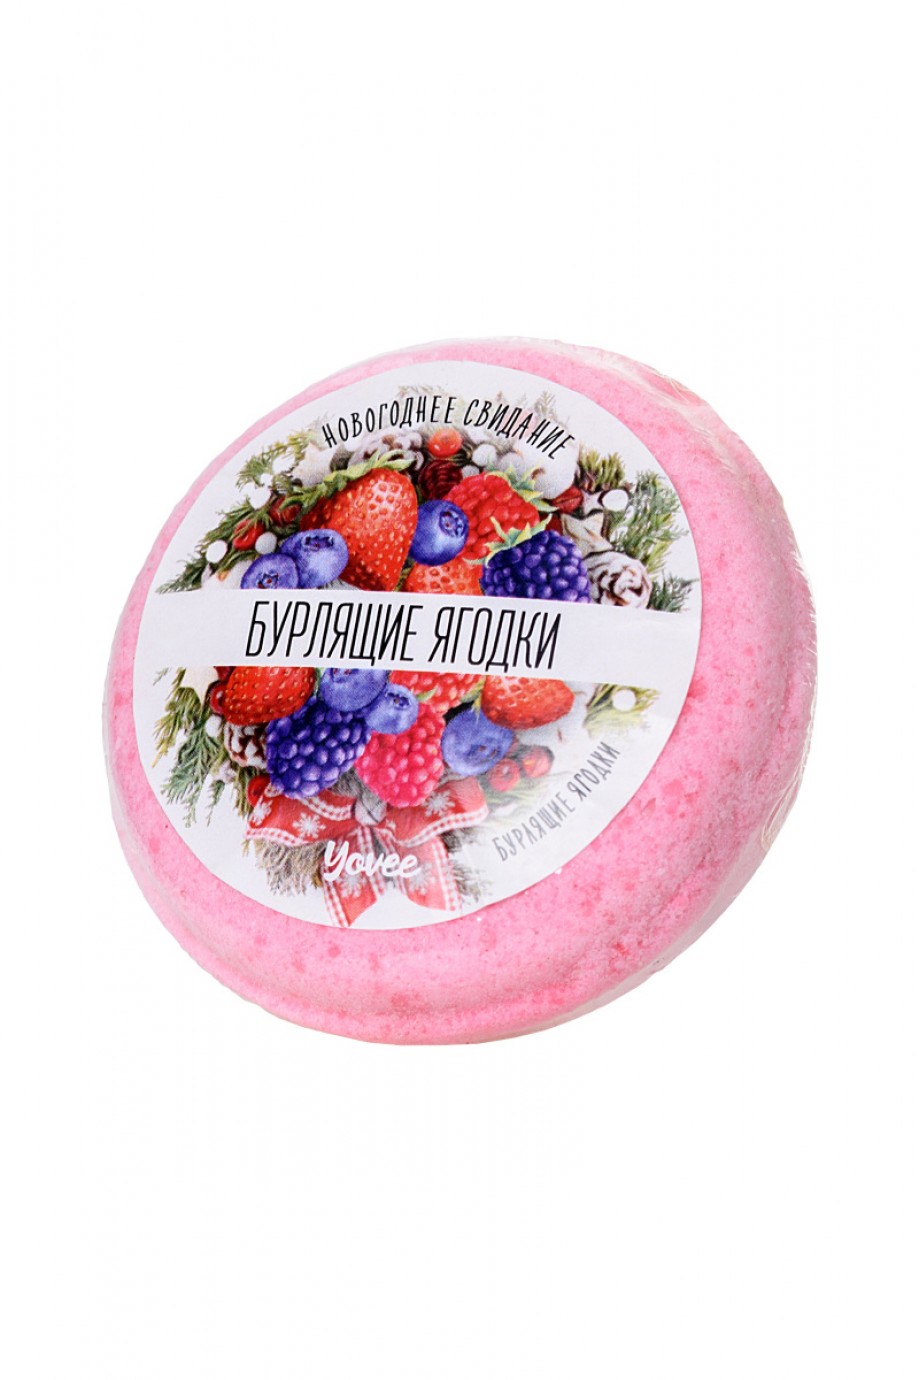 Бомбочка для ванны Yovee by Toyfa «Бурлящие ягодки», с ароматом сладких ягод, 70 г